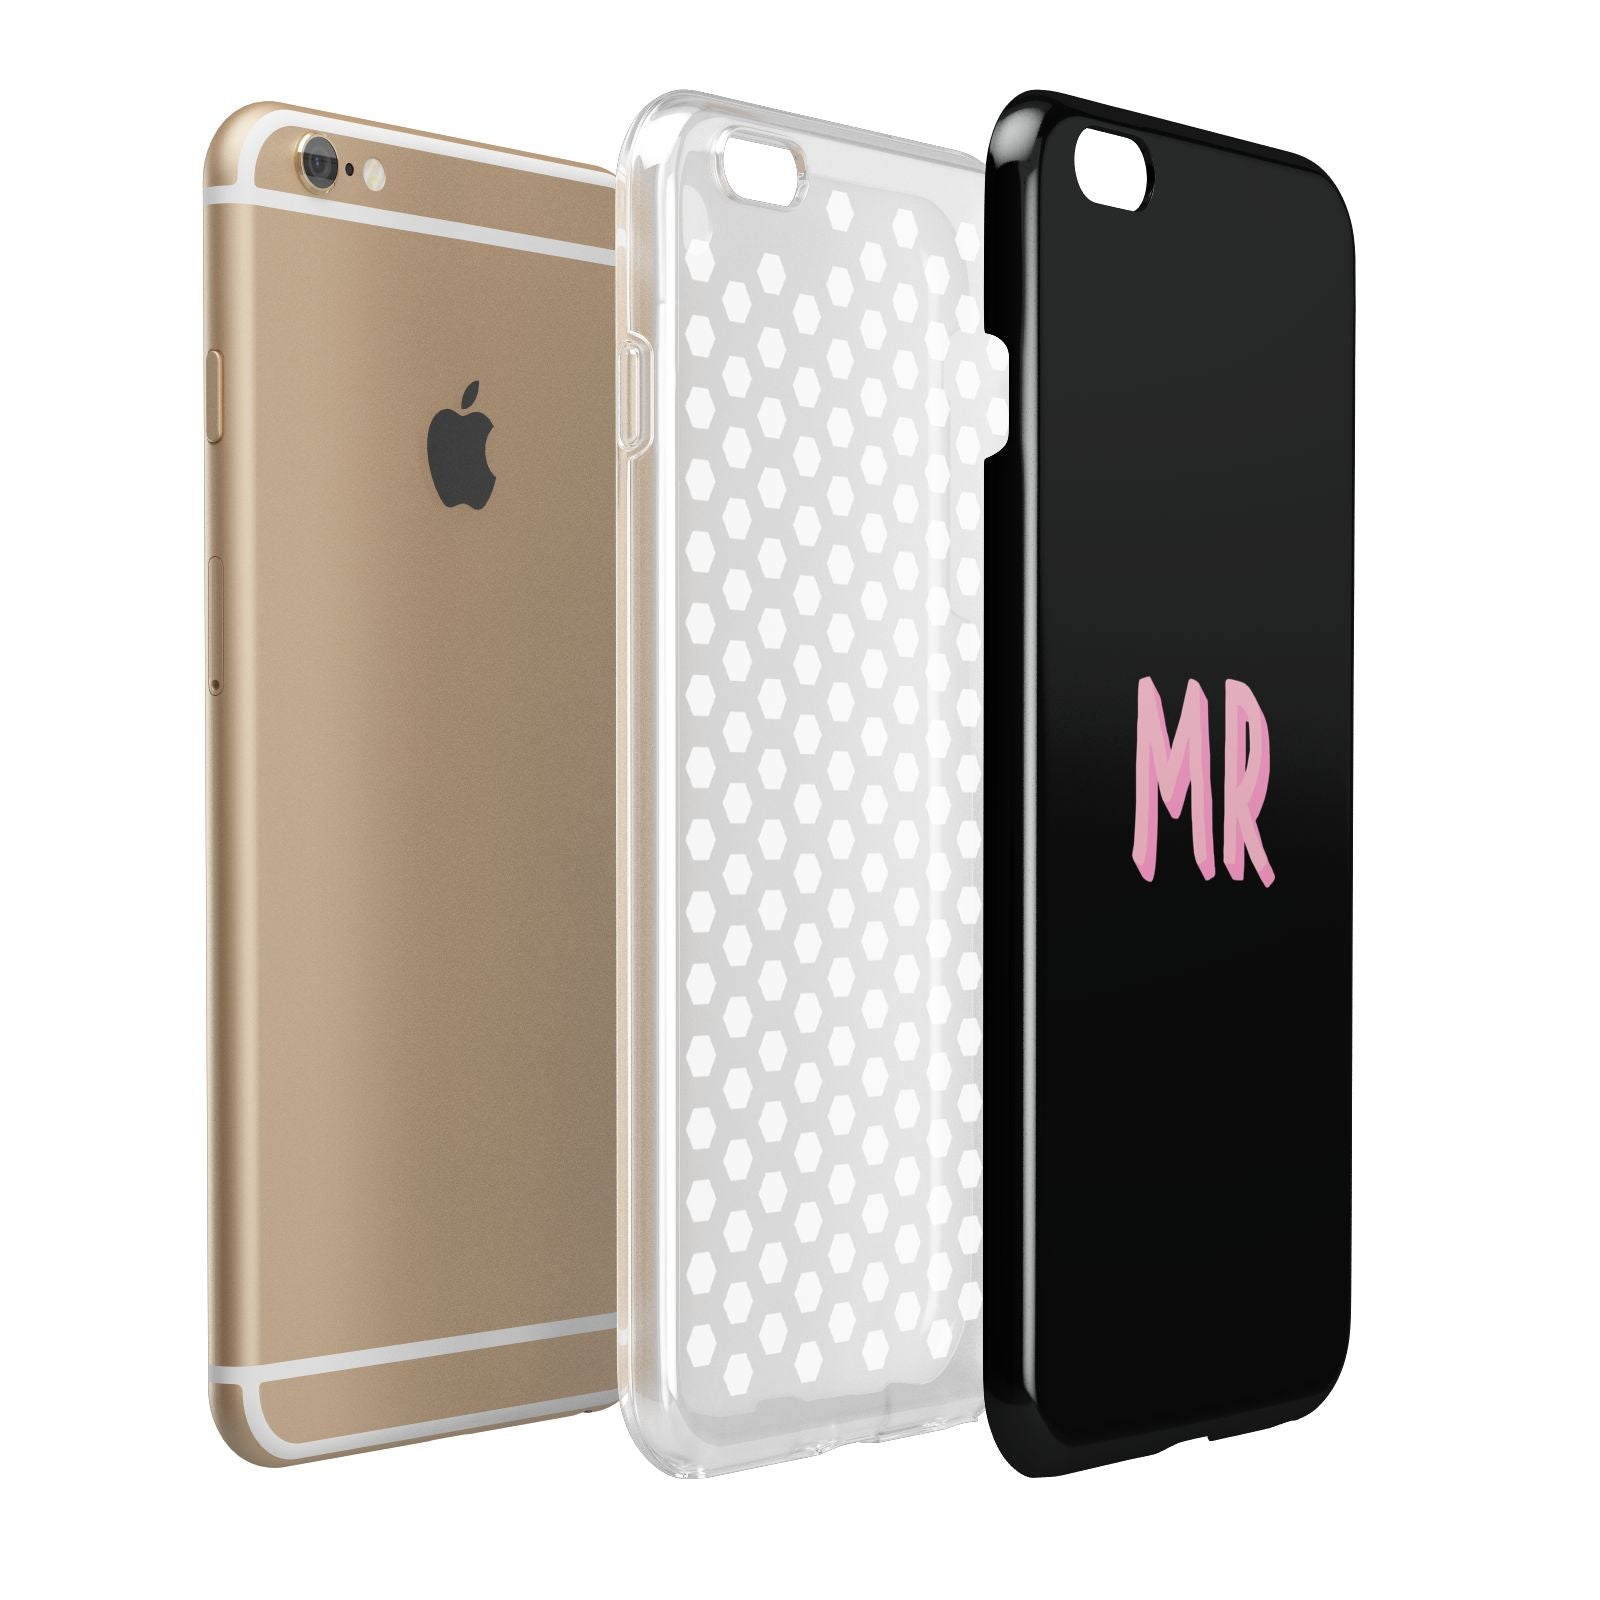 Mr Apple iPhone 6 Plus 3D Tough Case